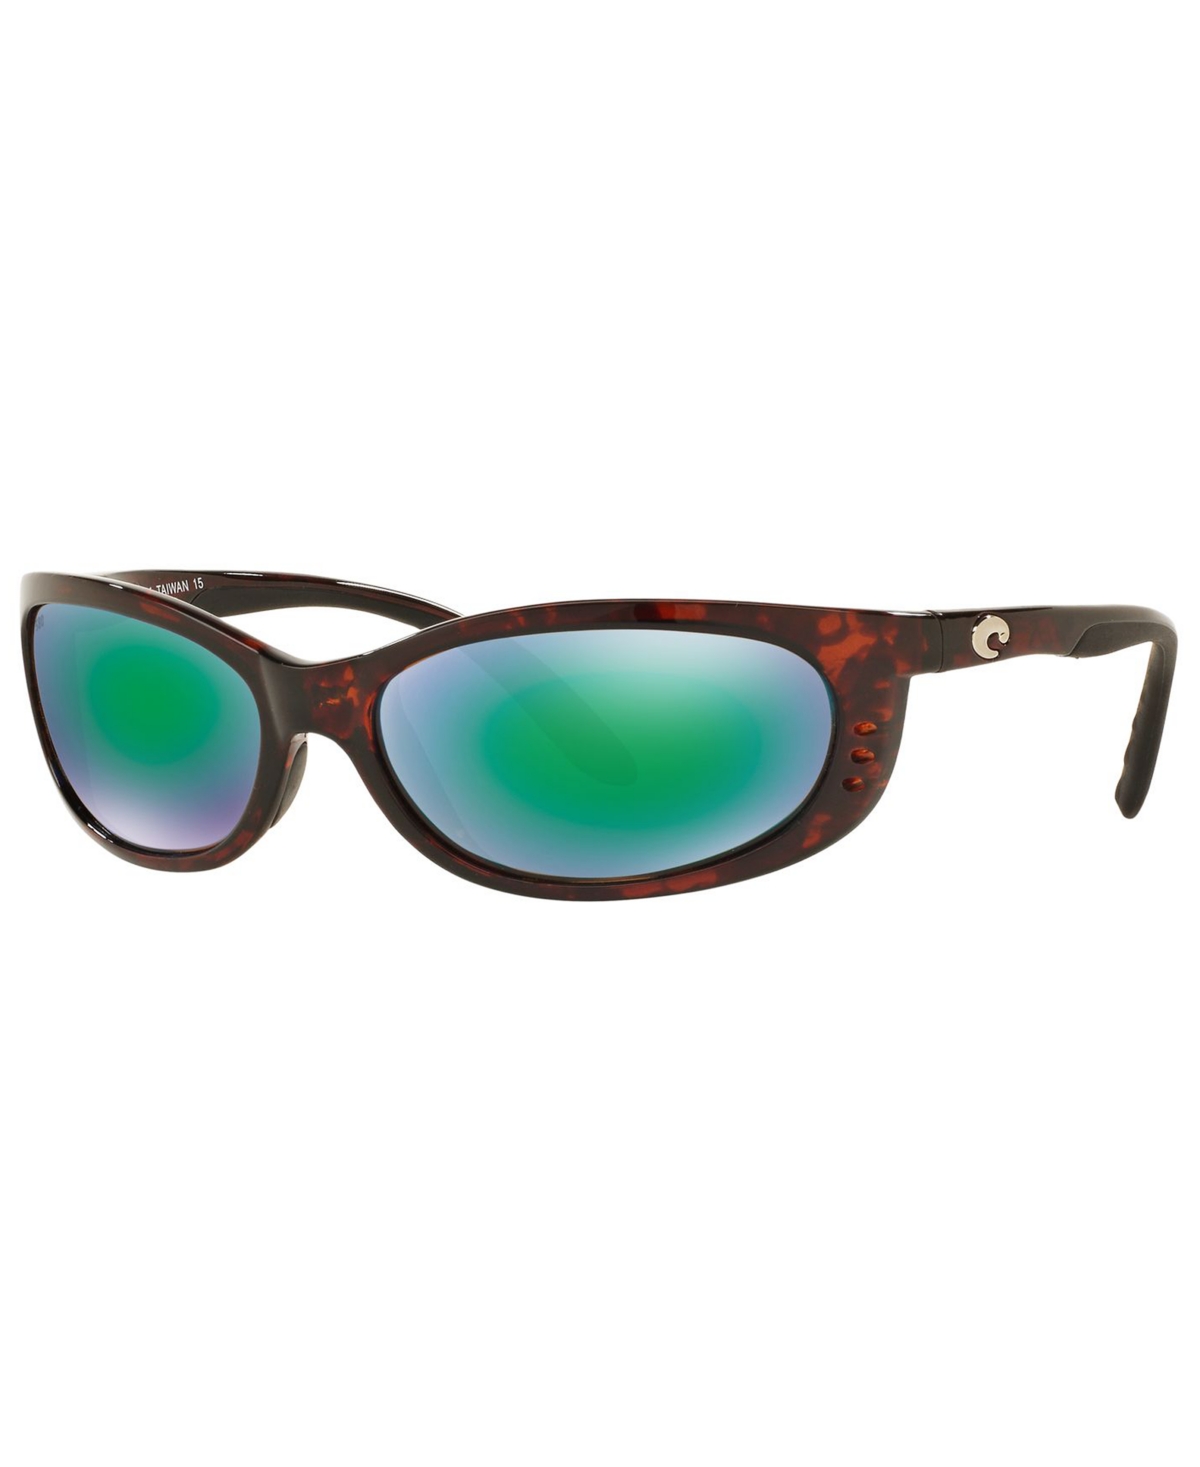 Costa Del Mar Polarized Sunglasses, Fathomp